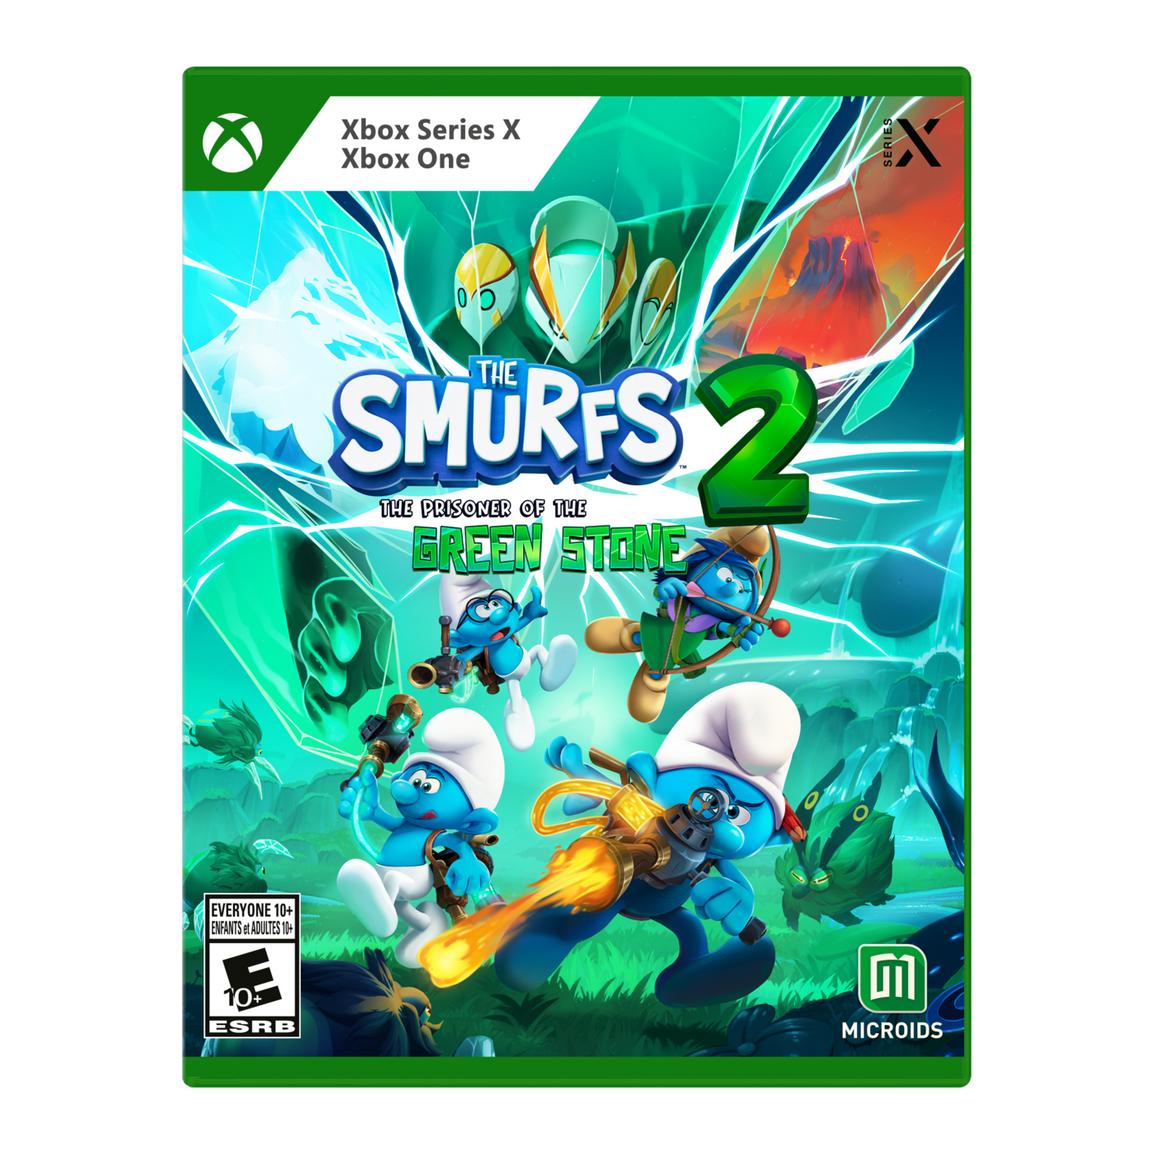 Видеоигра The Smurfs 2: Prisoner of the Green Stone - Xbox Series X, Xbox One фигура bearbrick medicom toy the smurfs the purple smurfs 1000%